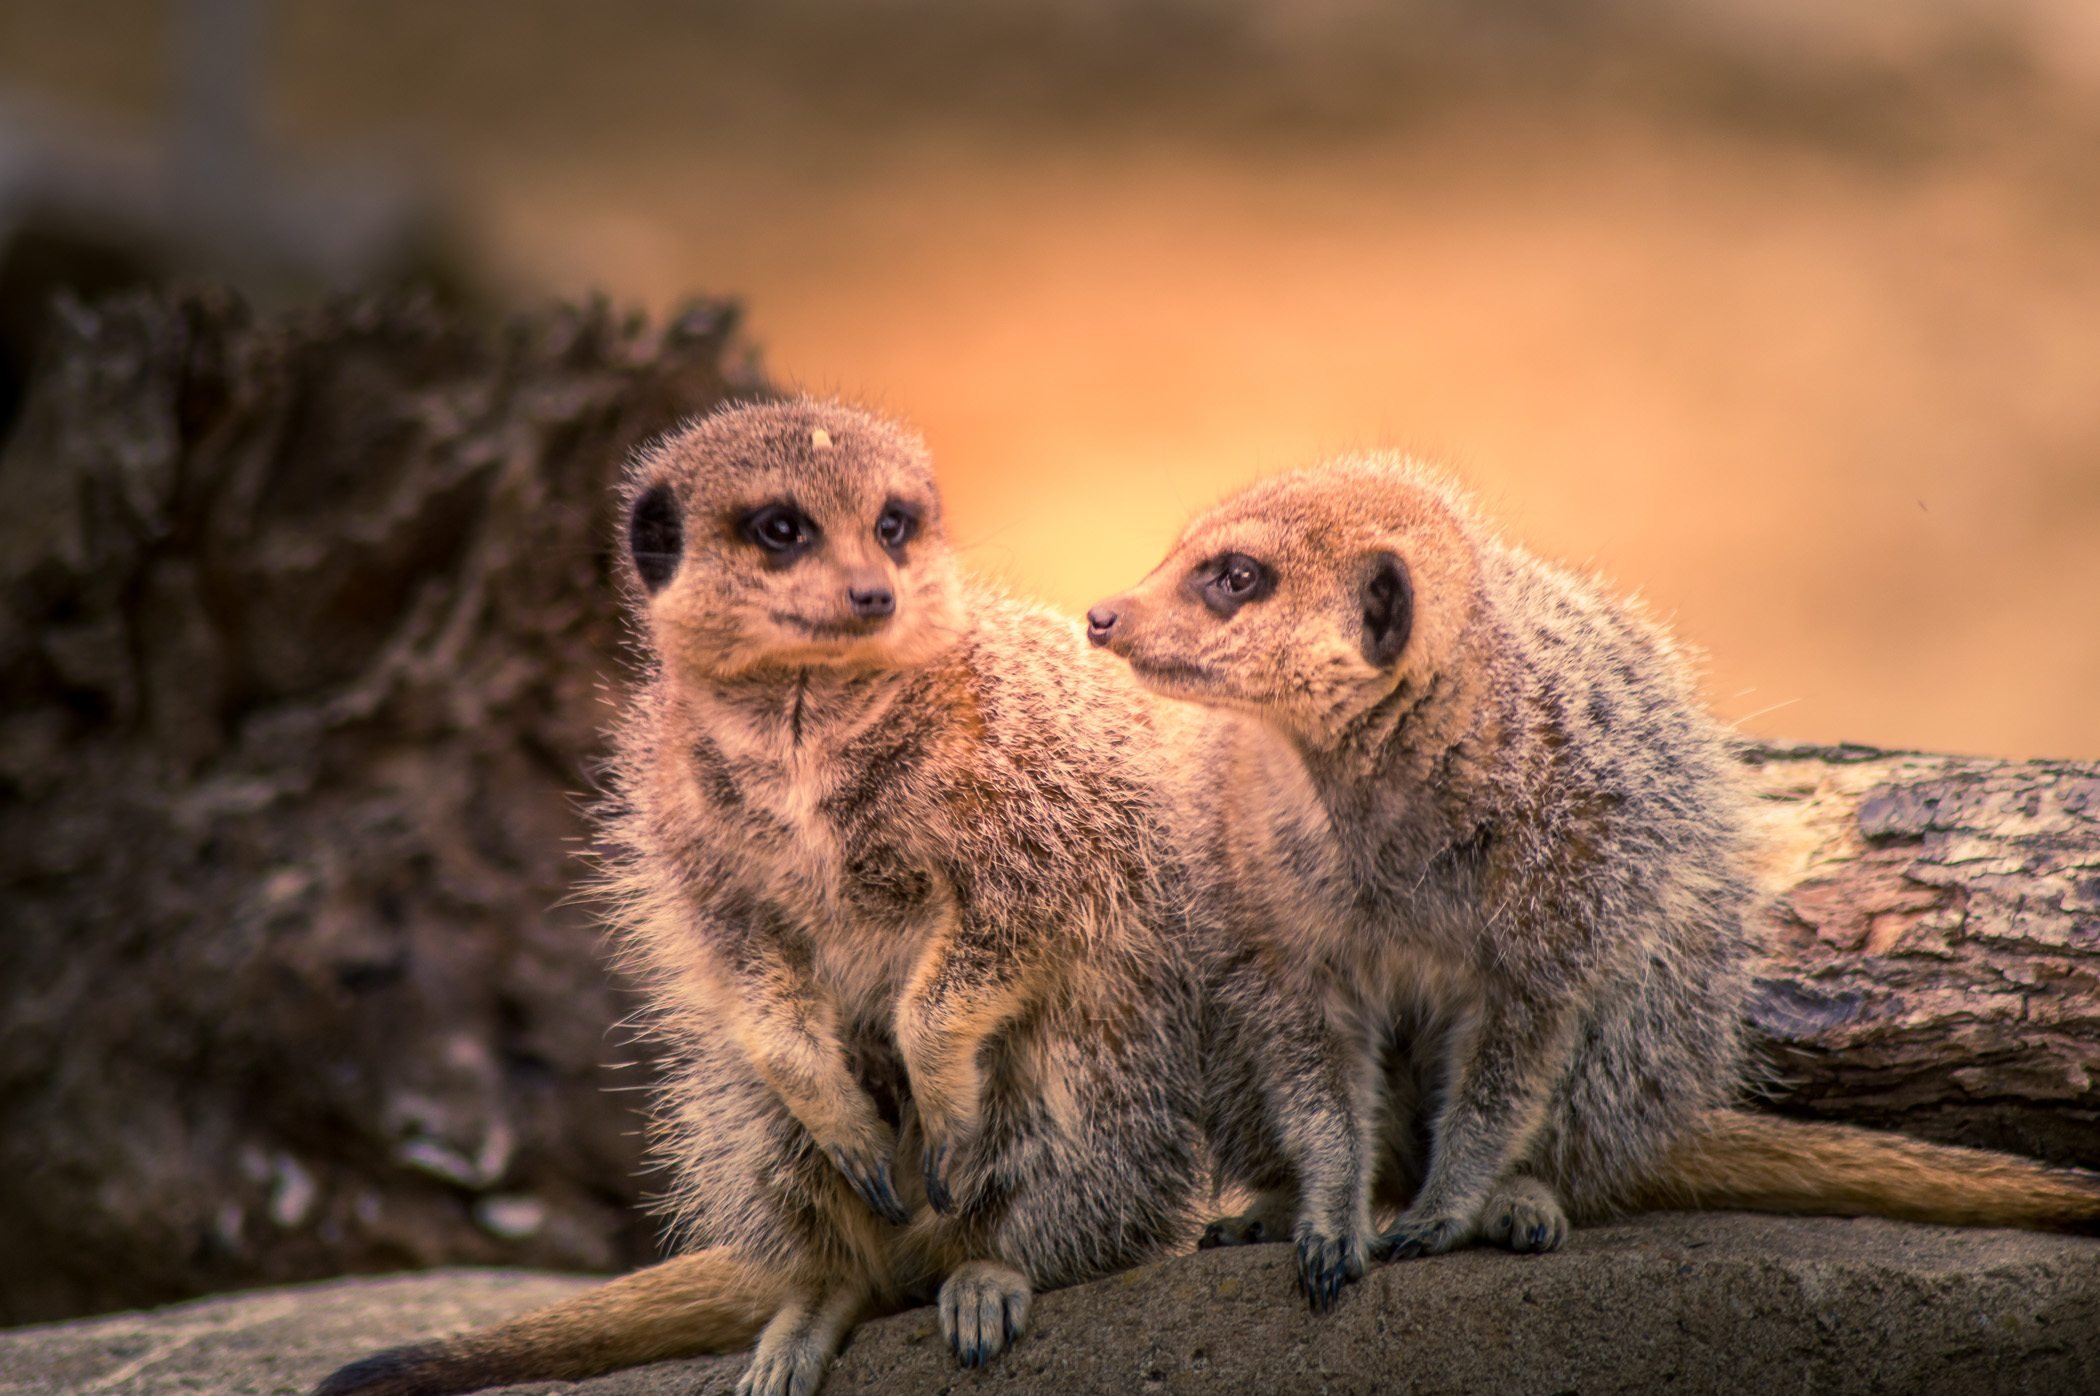 Meerkats chatting